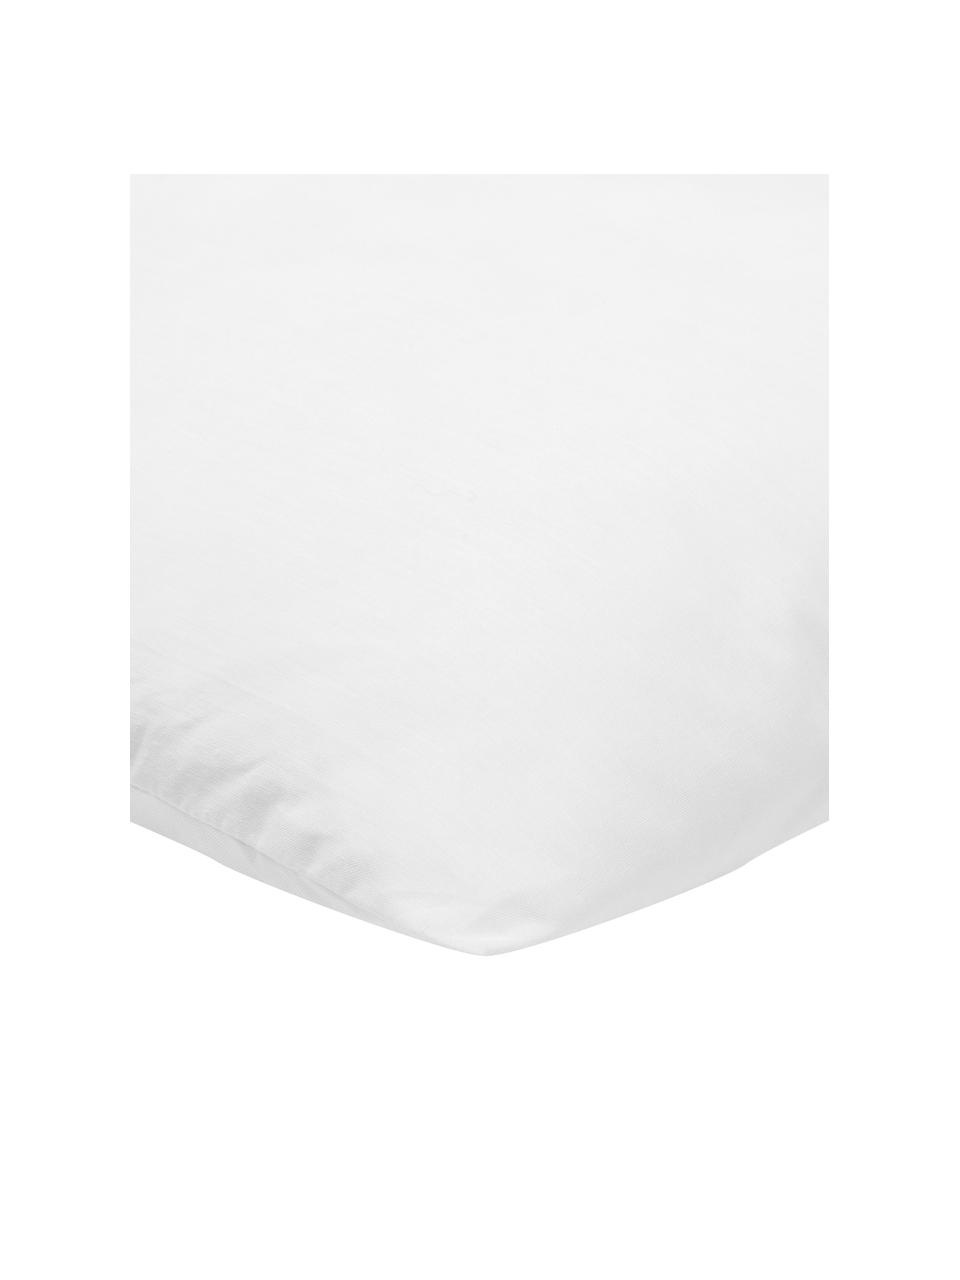 Kissen-Inlett Sia, 45x45, Microfaser-Füllung, Hülle: 100% Baumwolle, Weiß, B 45 x L 45 cm